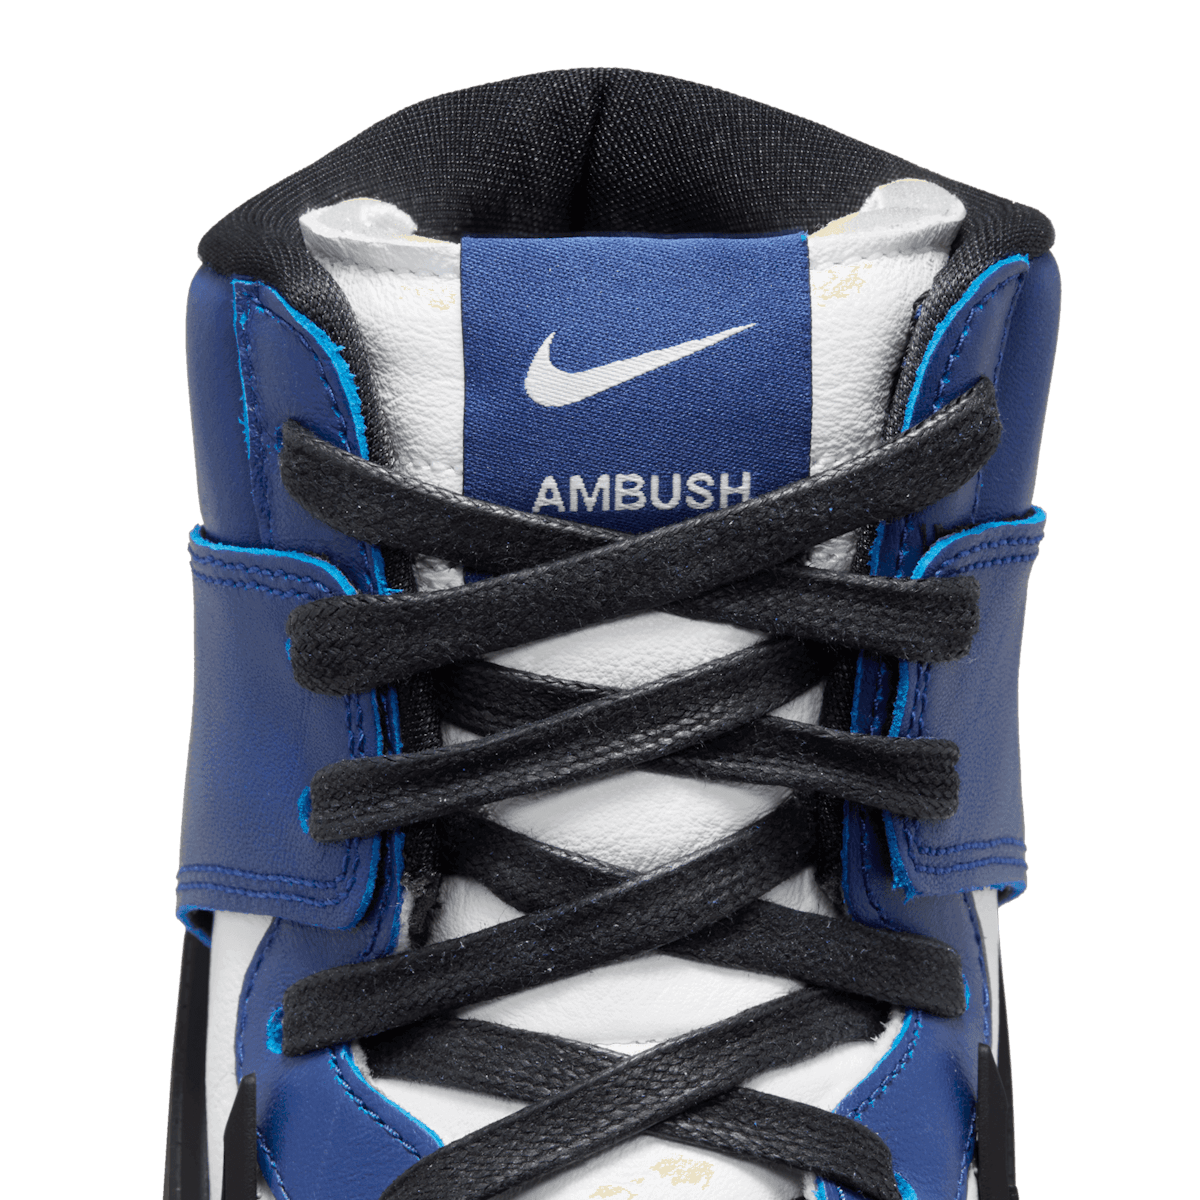 Nike Dunk High Ambush Deep Royal Blue Angle 6